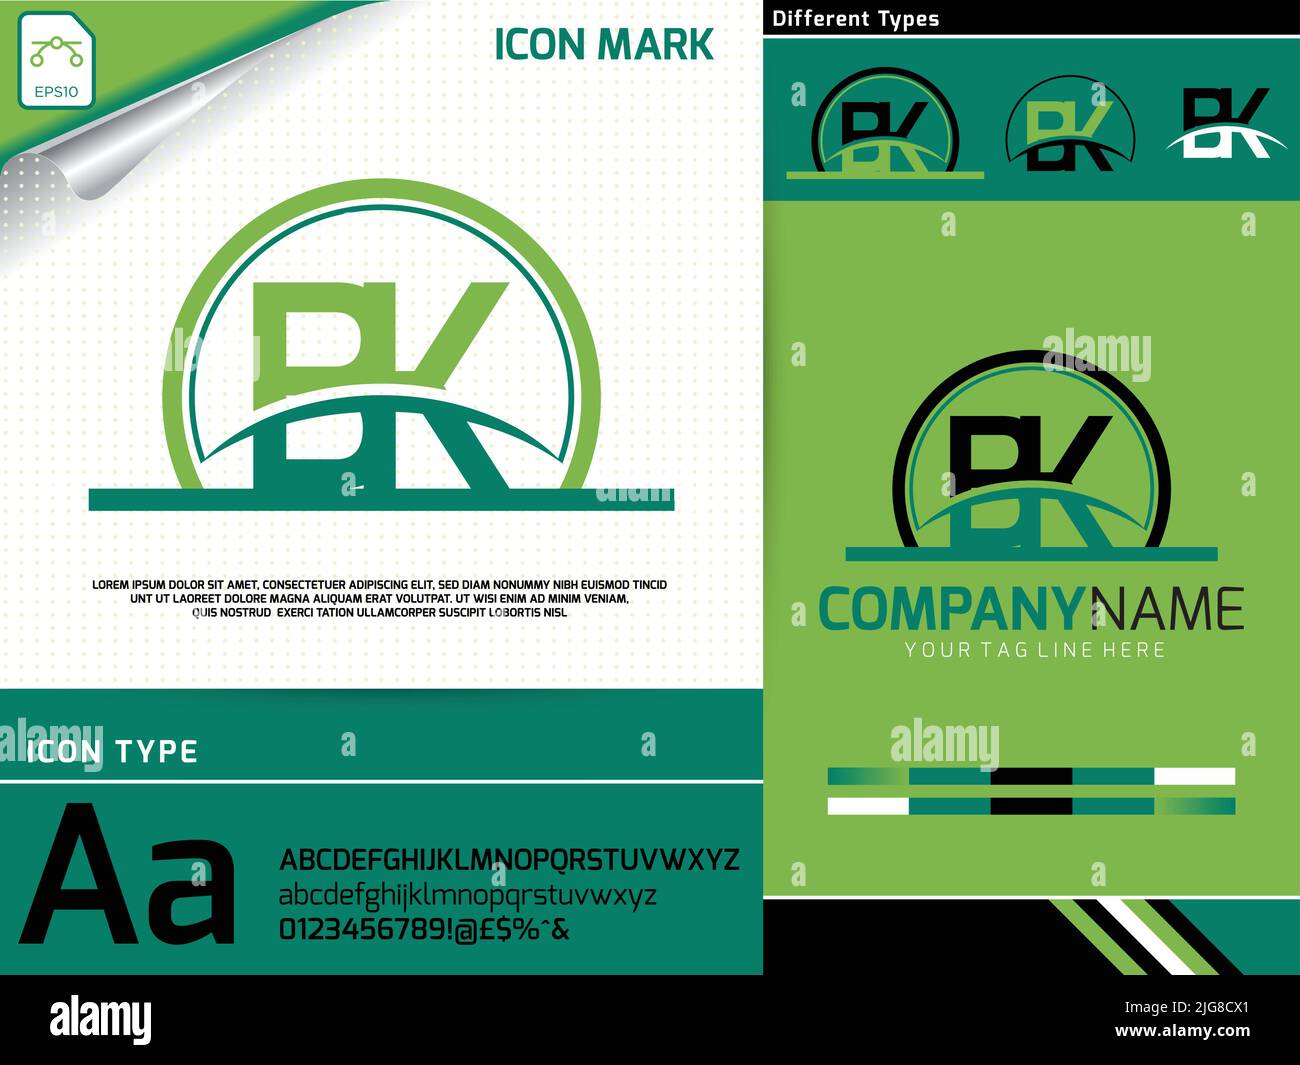 Lettre bk logo Premium Vector Illustration de Vecteur